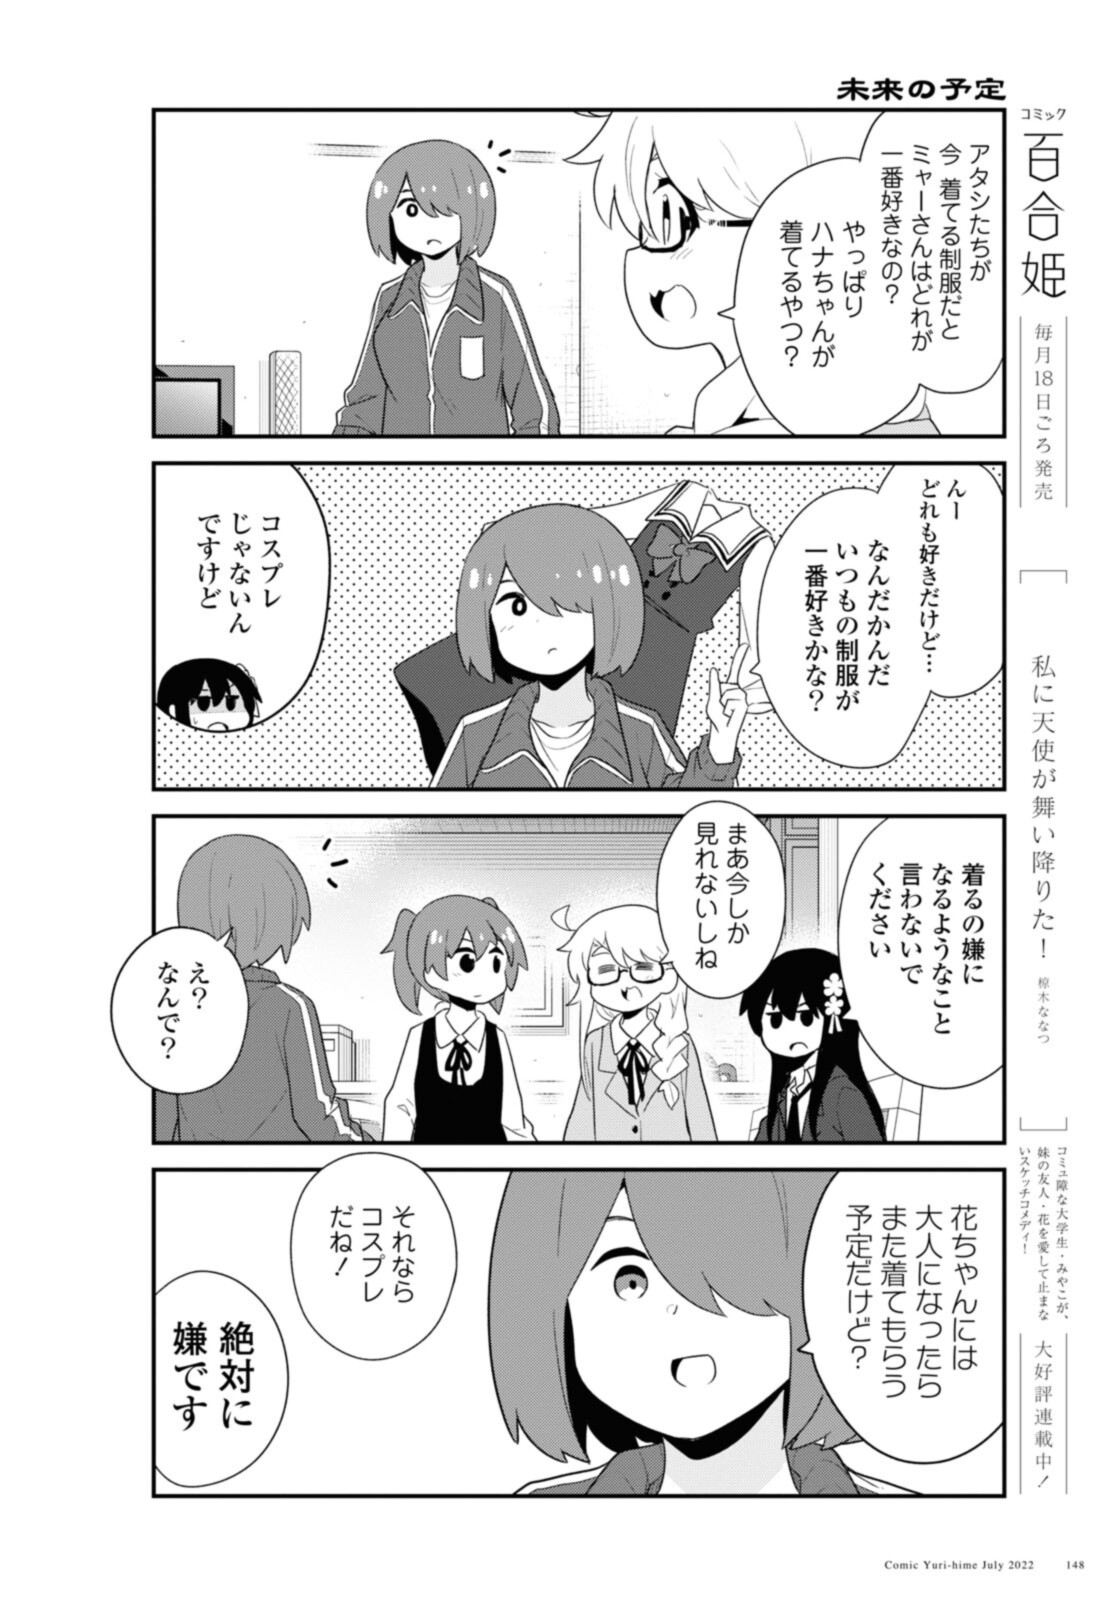 Watashi ni Tenshi ga Maiorita! - Chapter 97 - Page 14